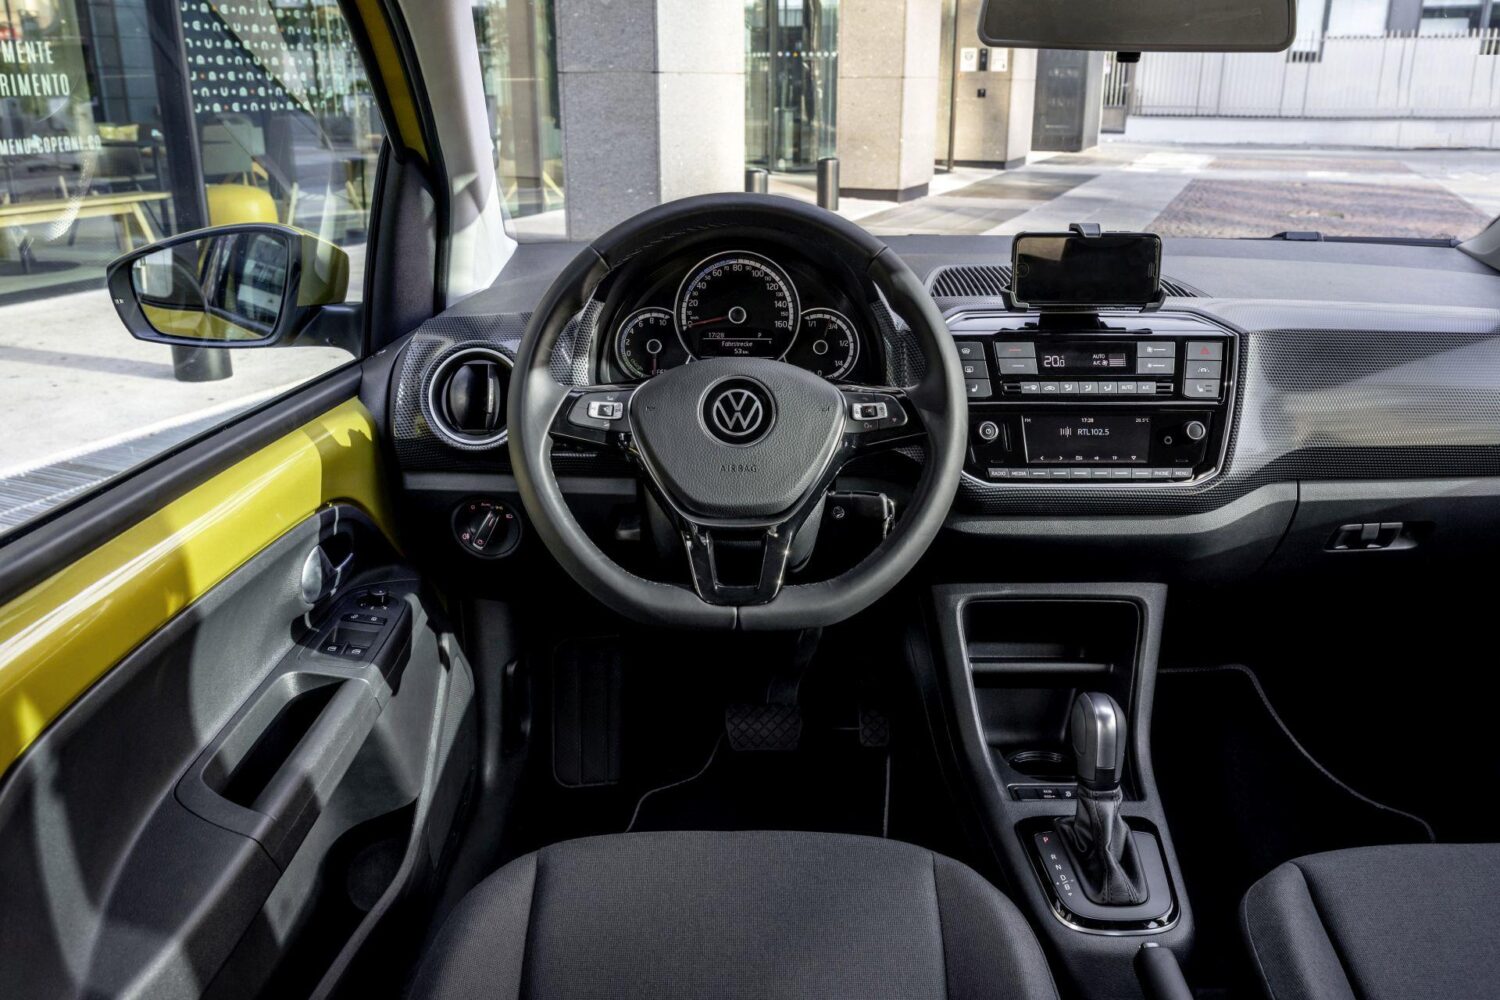 Innenraum des VW e-up!